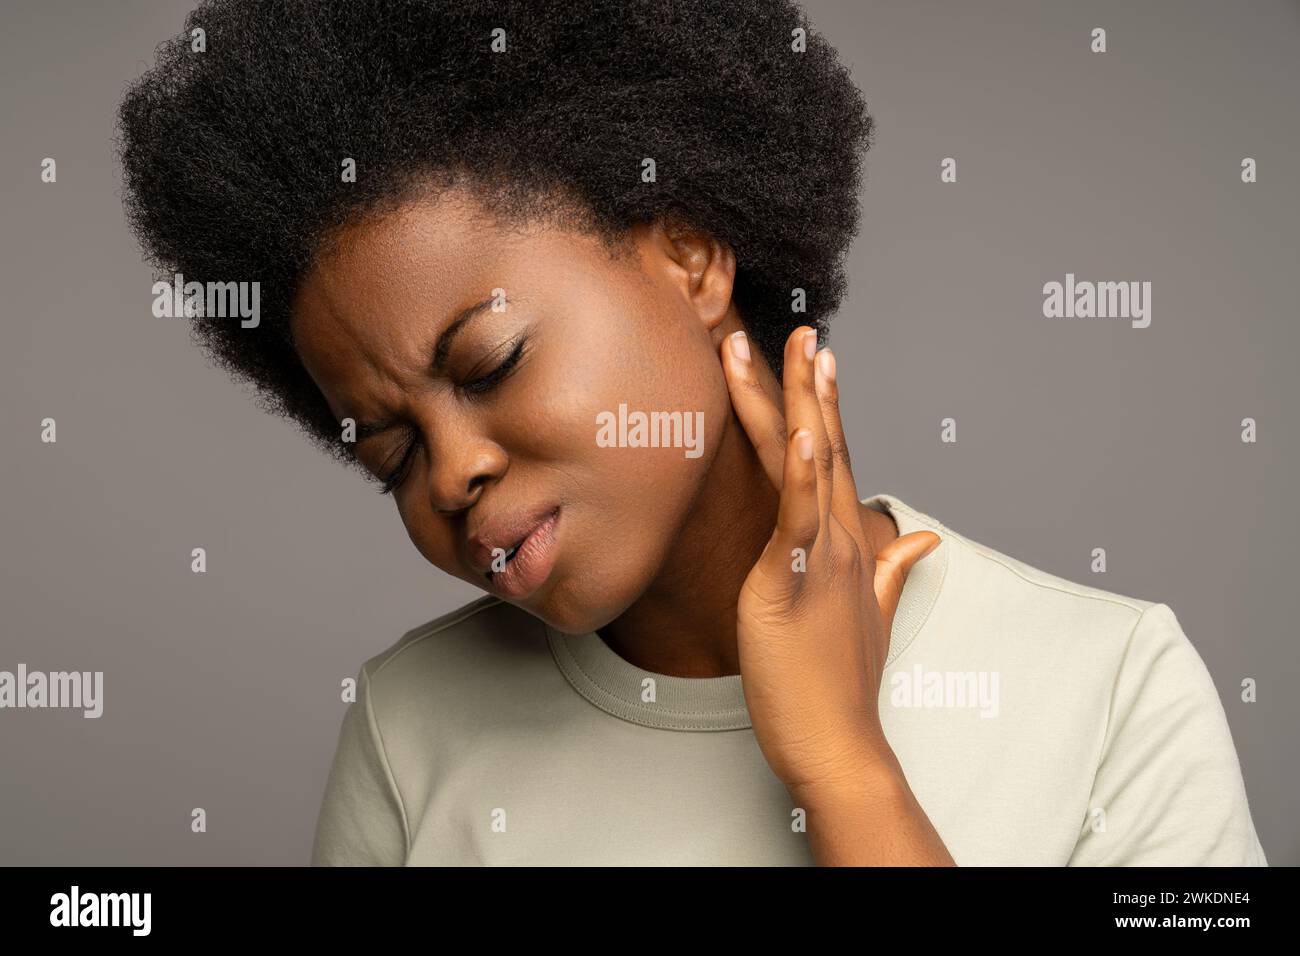 Femme noire souffrant de douleur, touchant des glandes lymphatiques élargies, ayant des symptômes de grippe, de rhume, de virus Banque D'Images